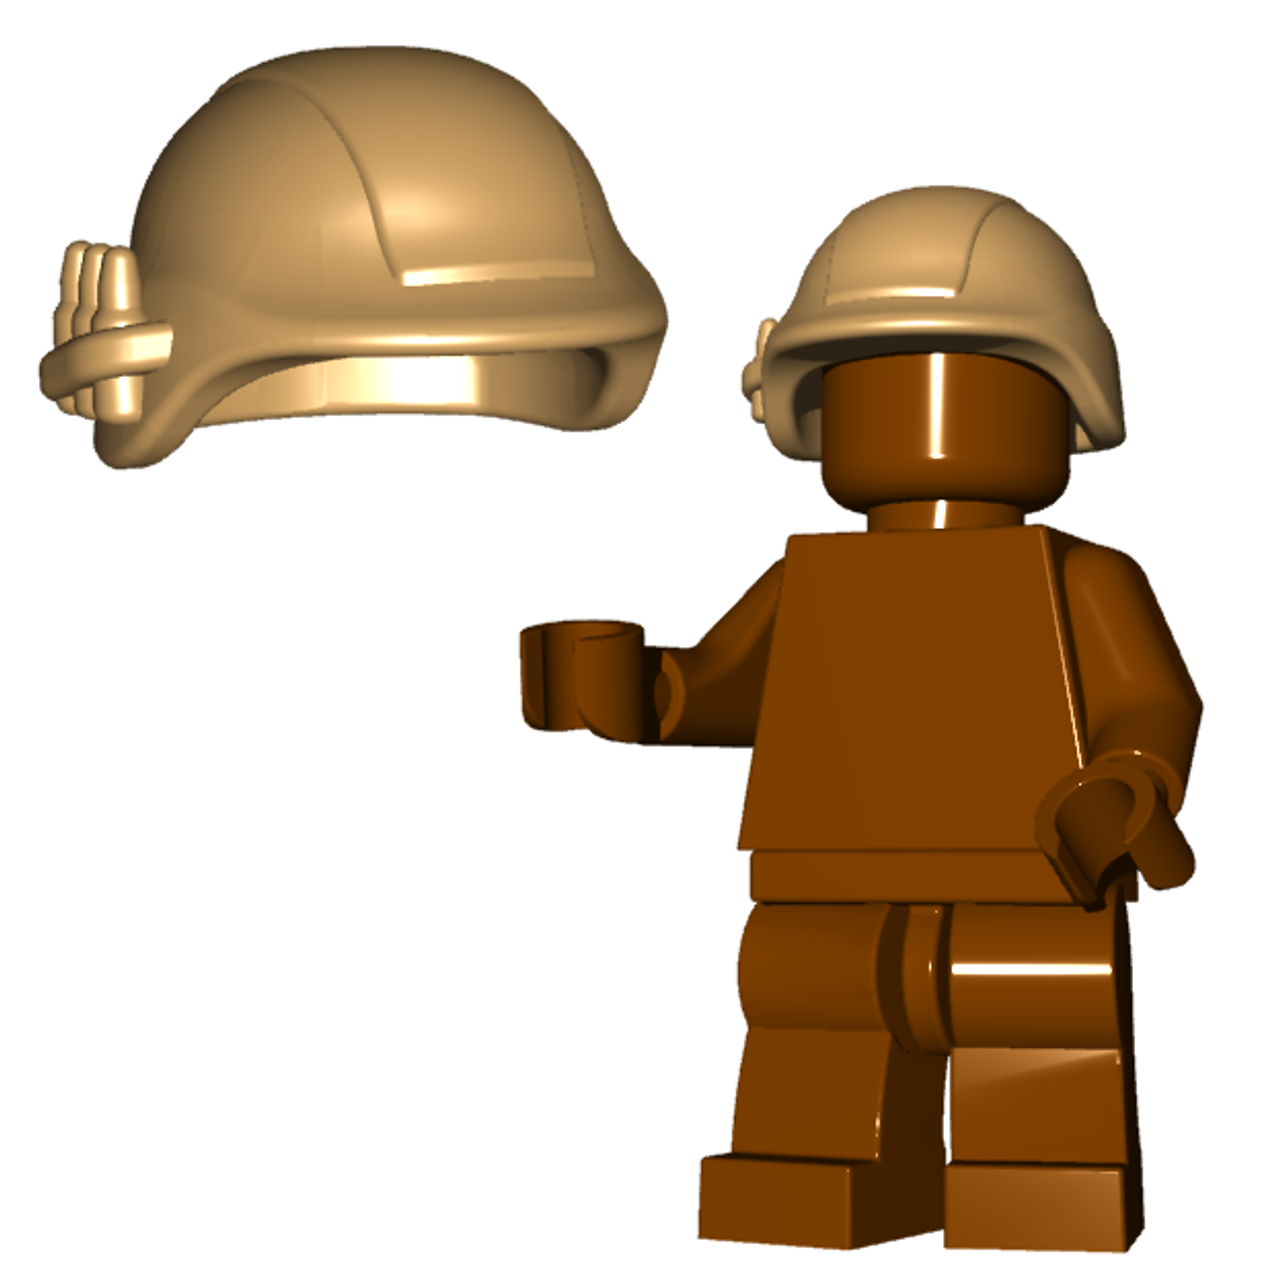 Minifigure Helmet - Military Helmet